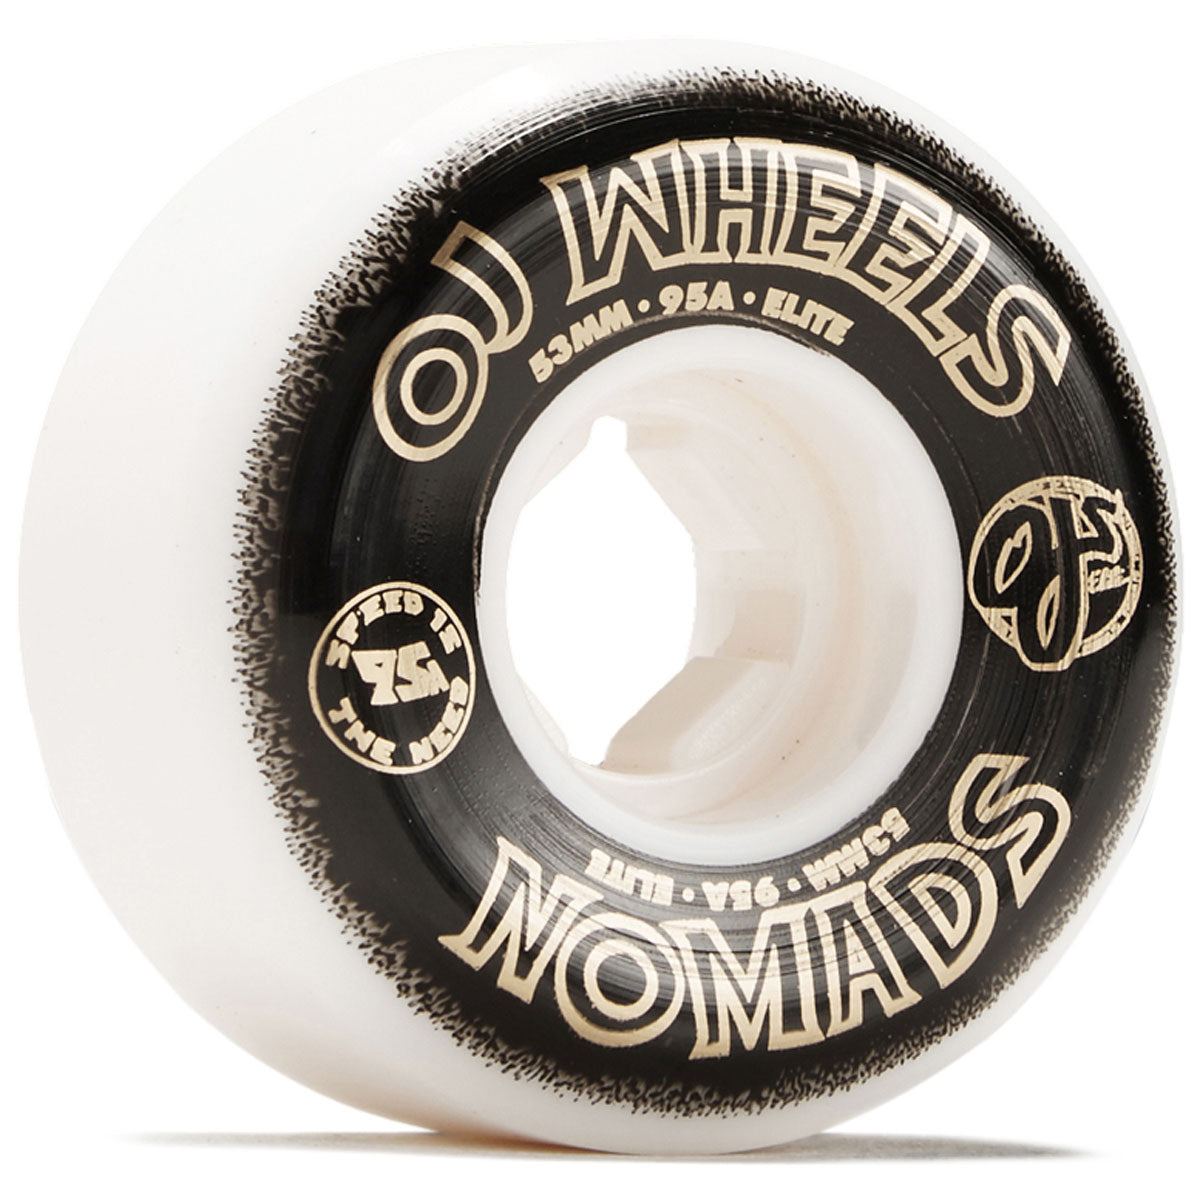 OJ Elite Nomads 95a Skateboard Wheels - 53mm image 1